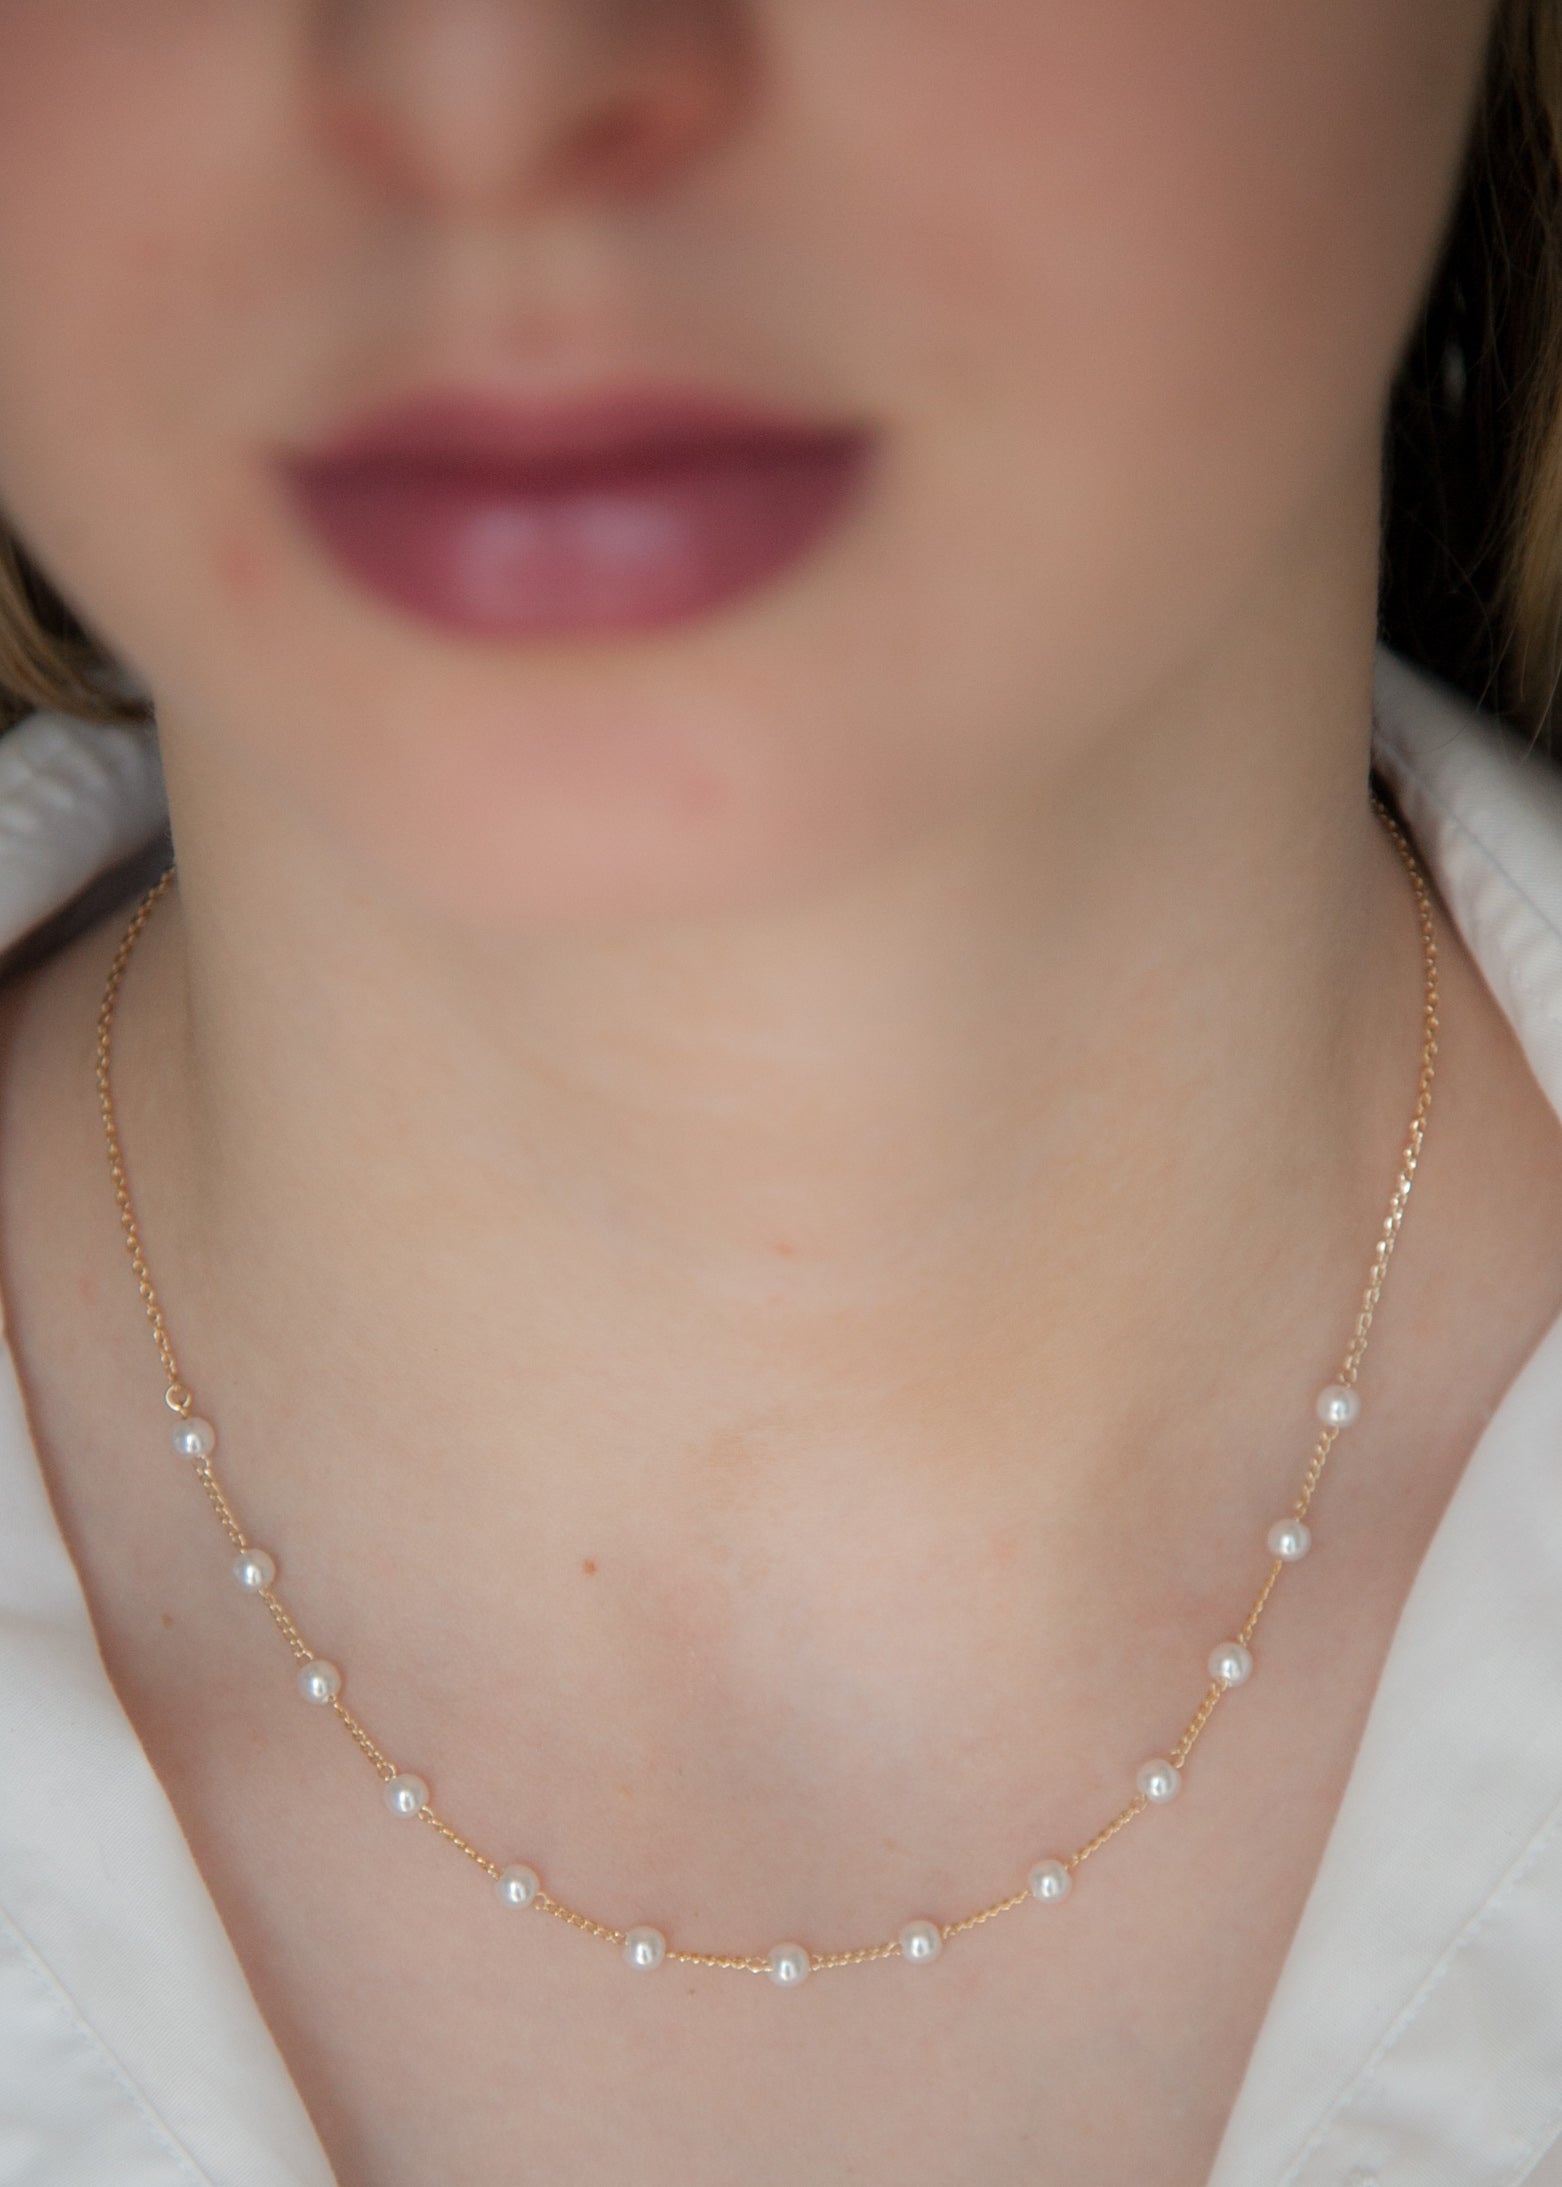 Kette mit weißen Perlen  vergoldet - Halskette für Damen